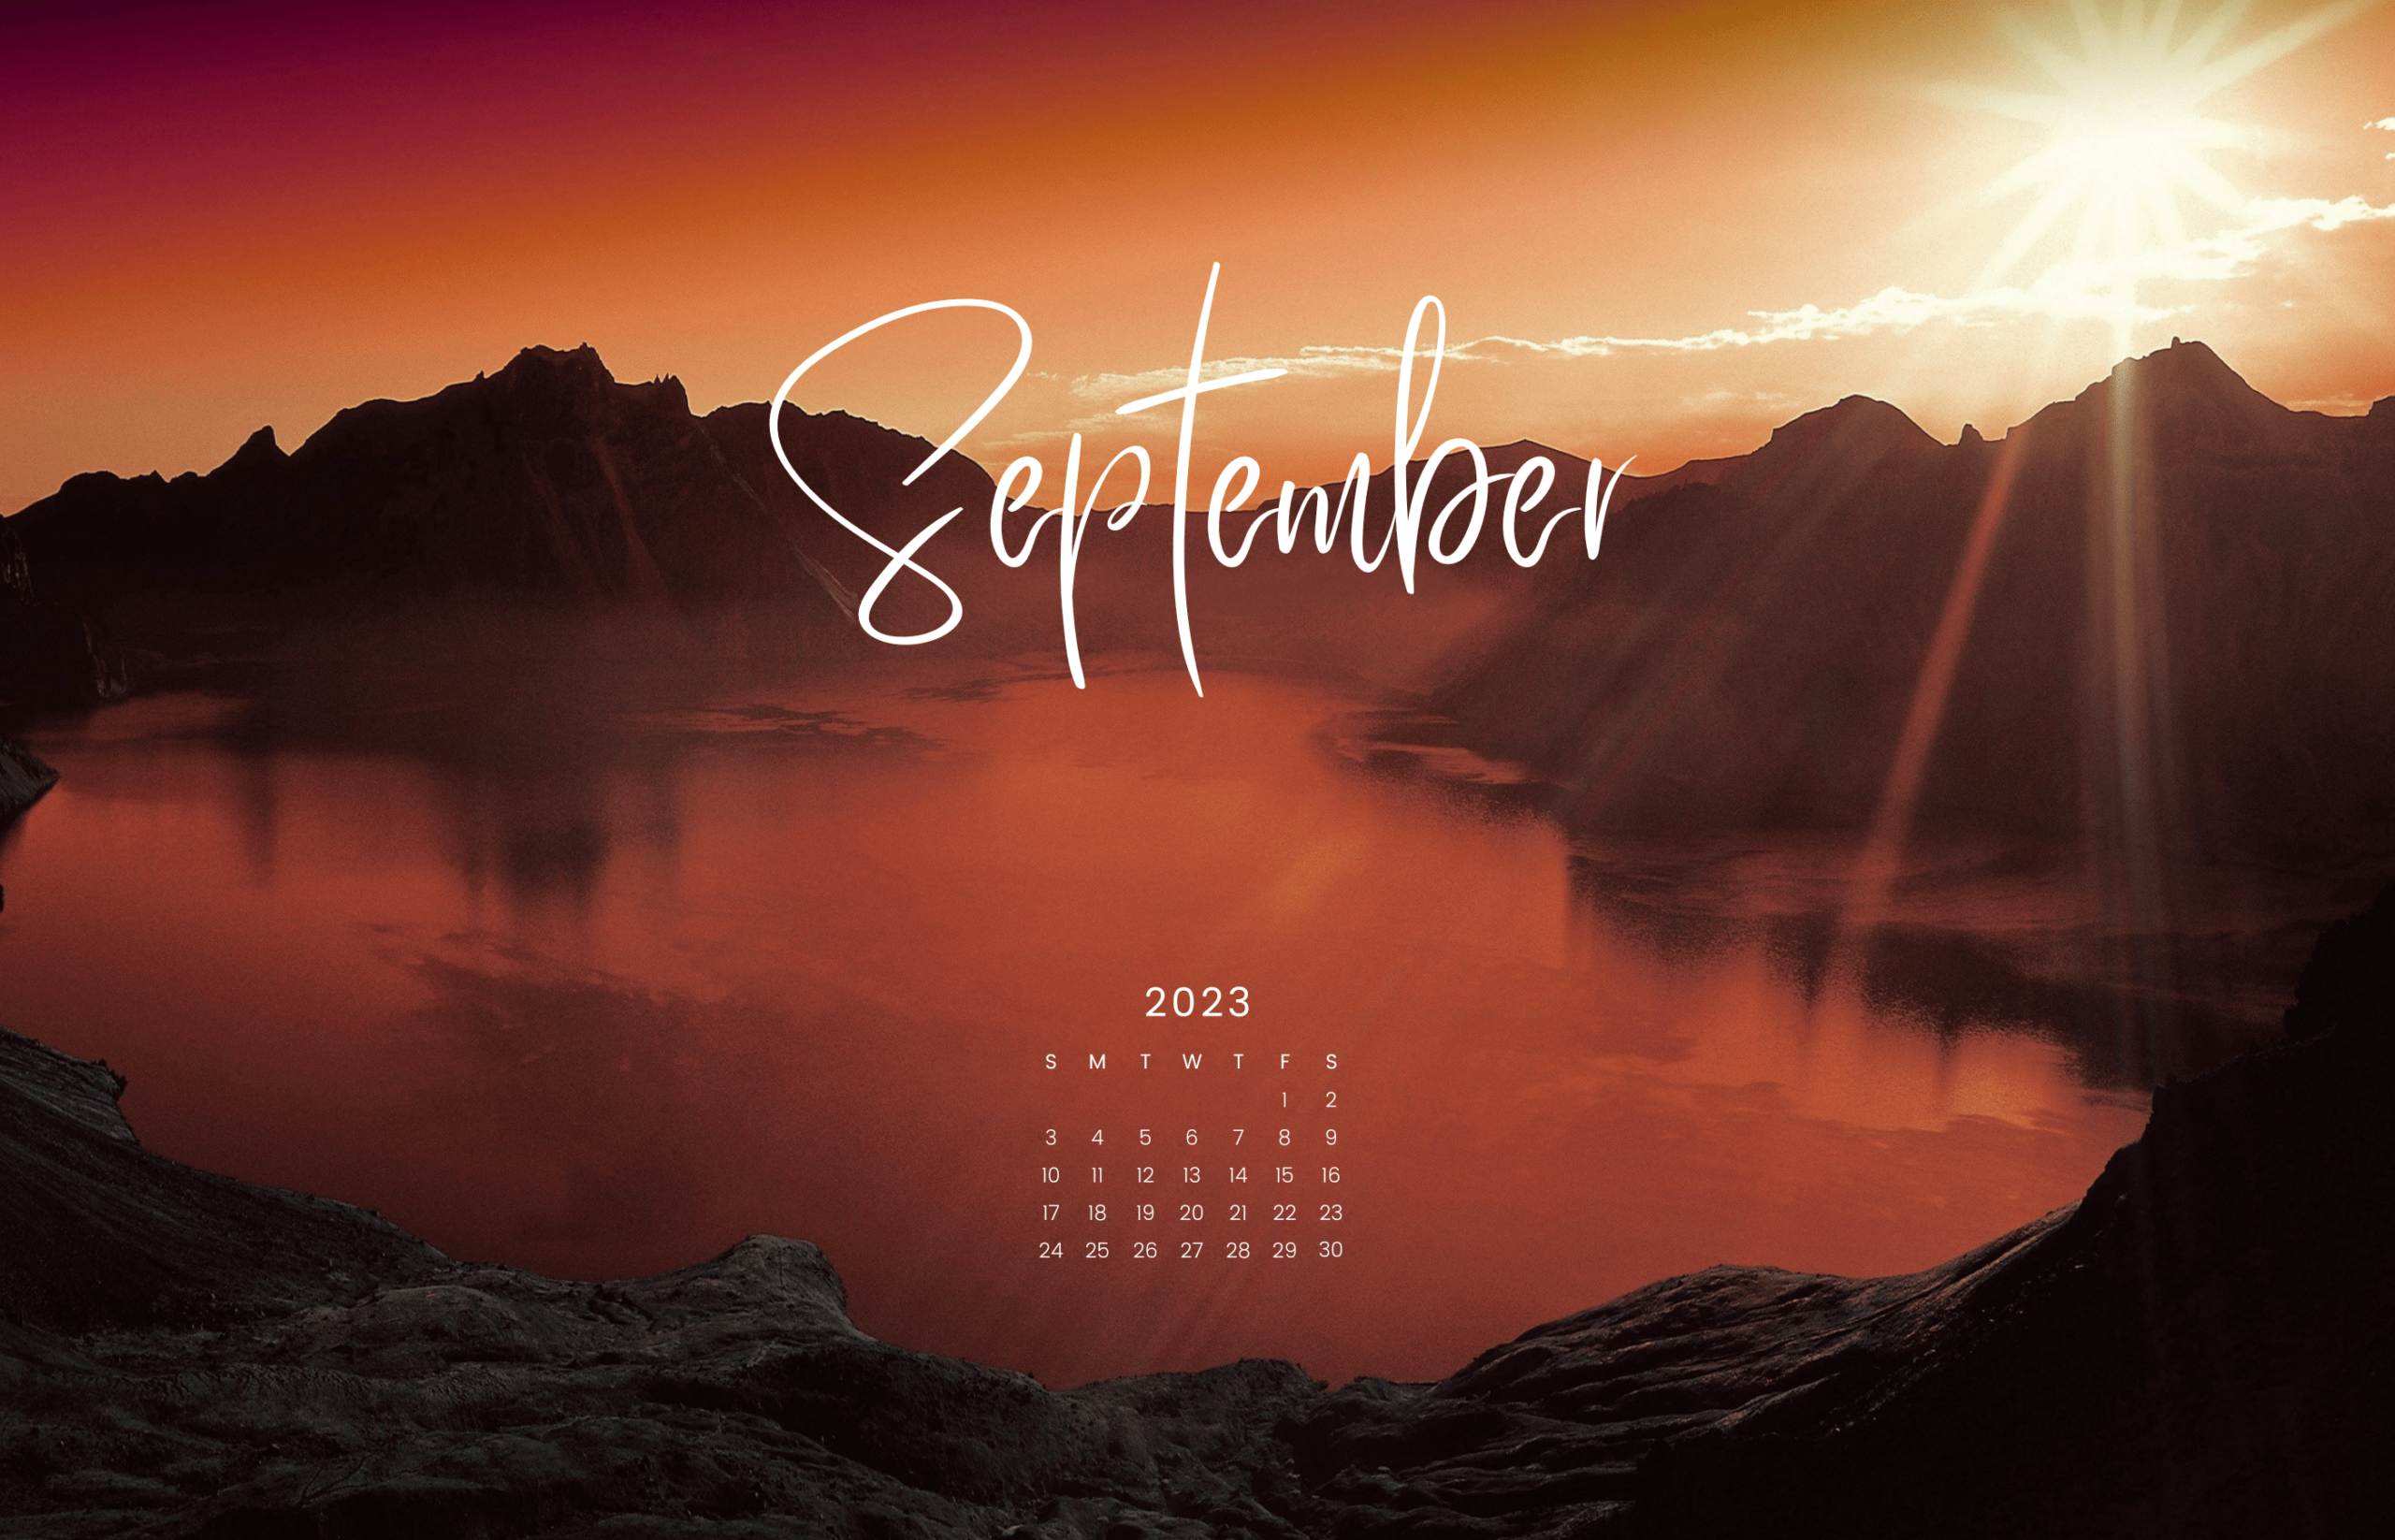 September 2020 wallpaper for desktop and mobile  Flicker Leap